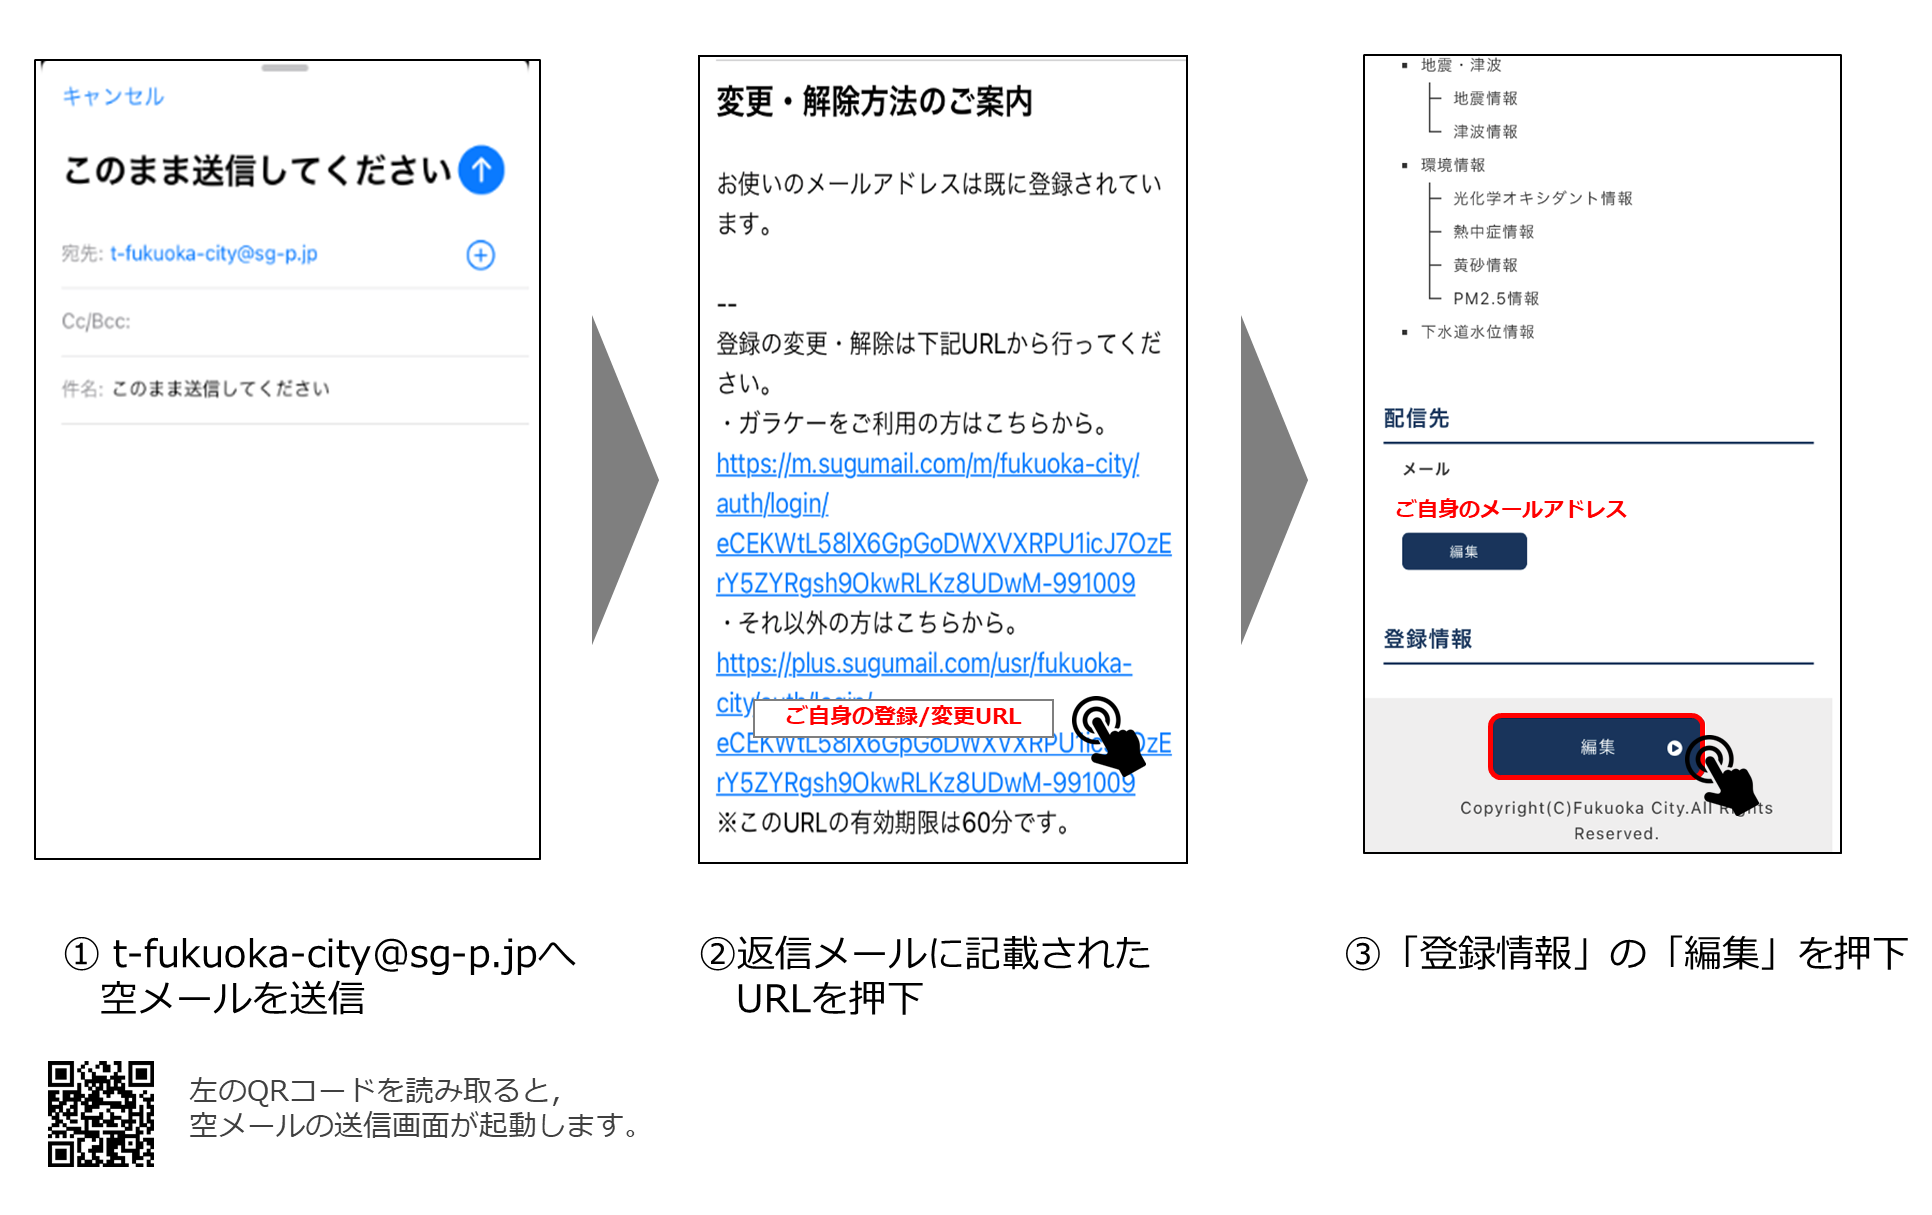 防災メールの受信変更内容イメージ,1 t-fukuoka-city@sg-p.jpへ空メールを送信,2 返信メールに記載されたURLを押下,3 「登録情報」の「編集」を押下